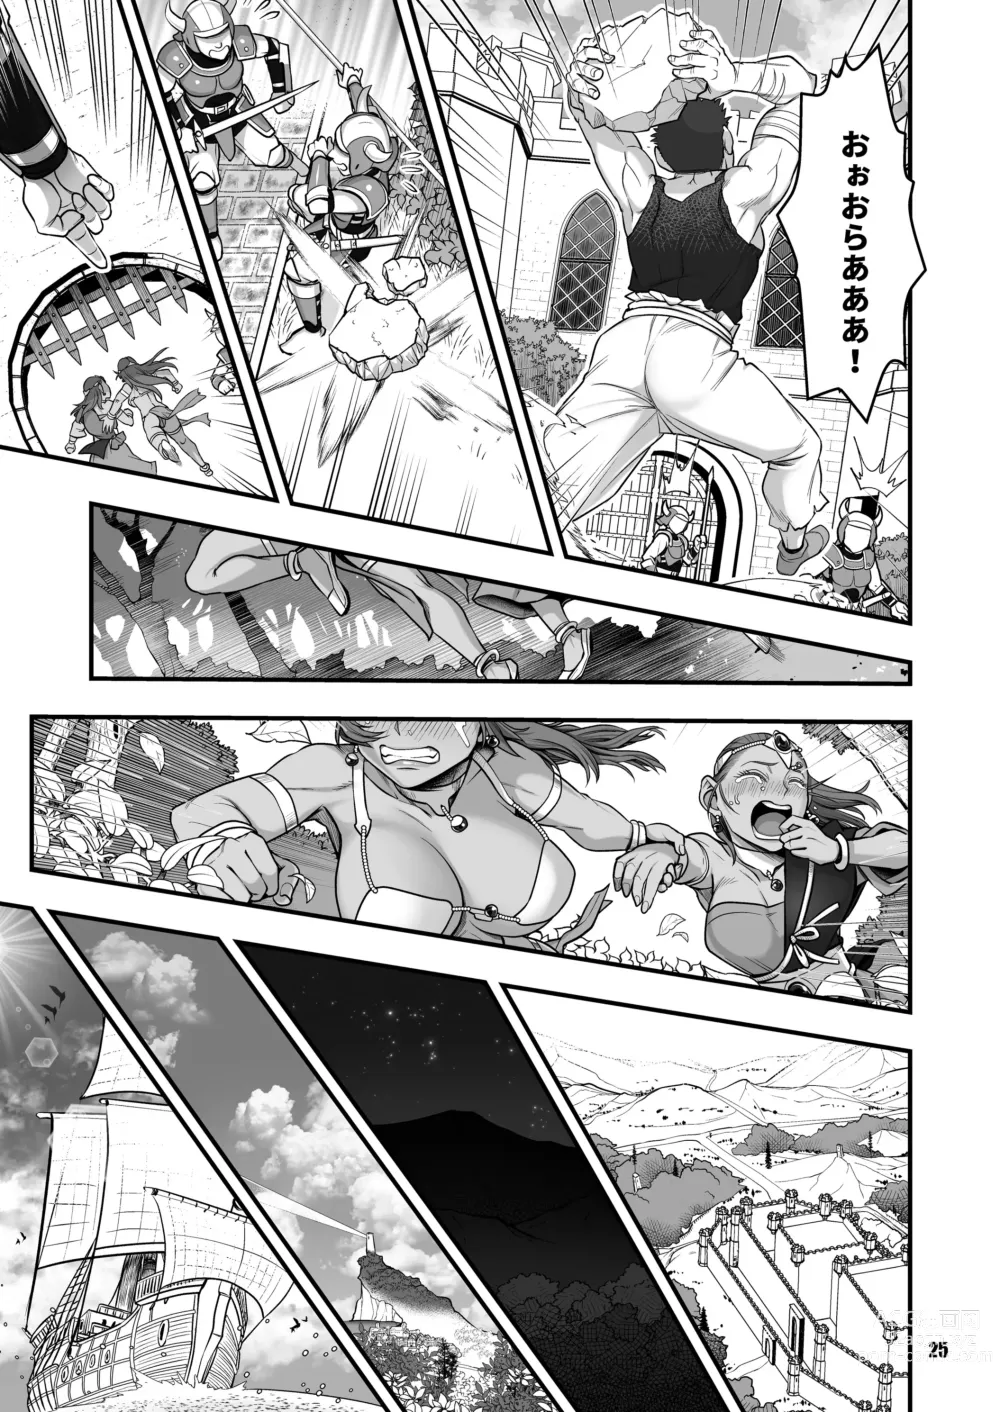 Page 25 of doujinshi Genkyou ~Cabecilla~ 5